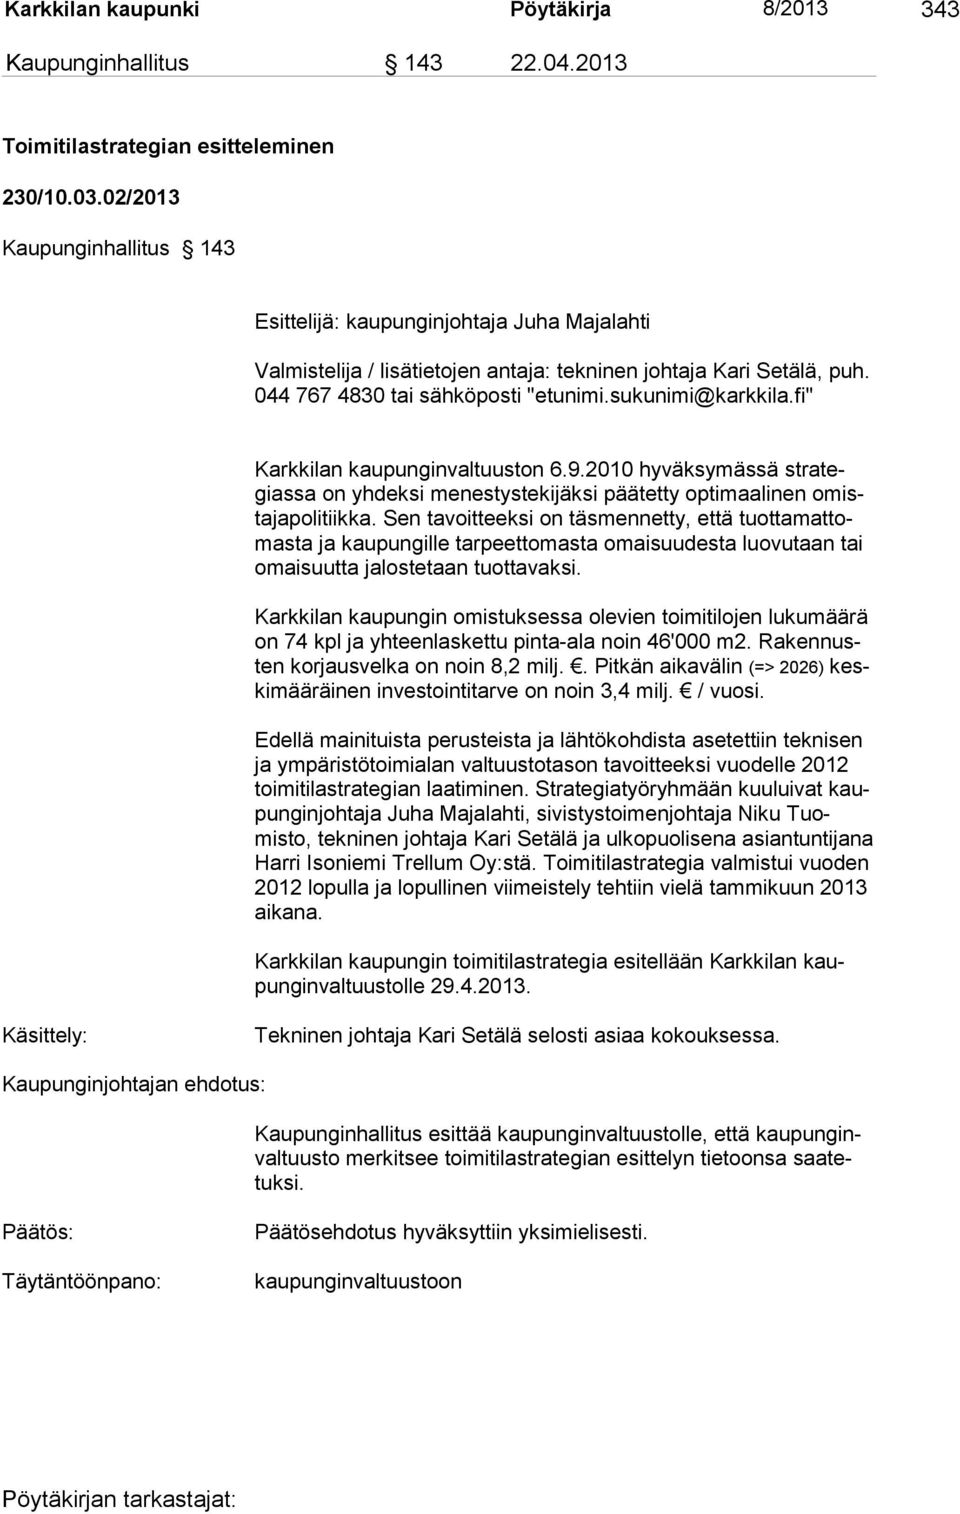 fi" Karkkilan kaupunginvaltuuston 6.9.2010 hyväksymässä strategiassa on yhdeksi menestystekijäksi päätetty optimaalinen omistajapolitiikka.